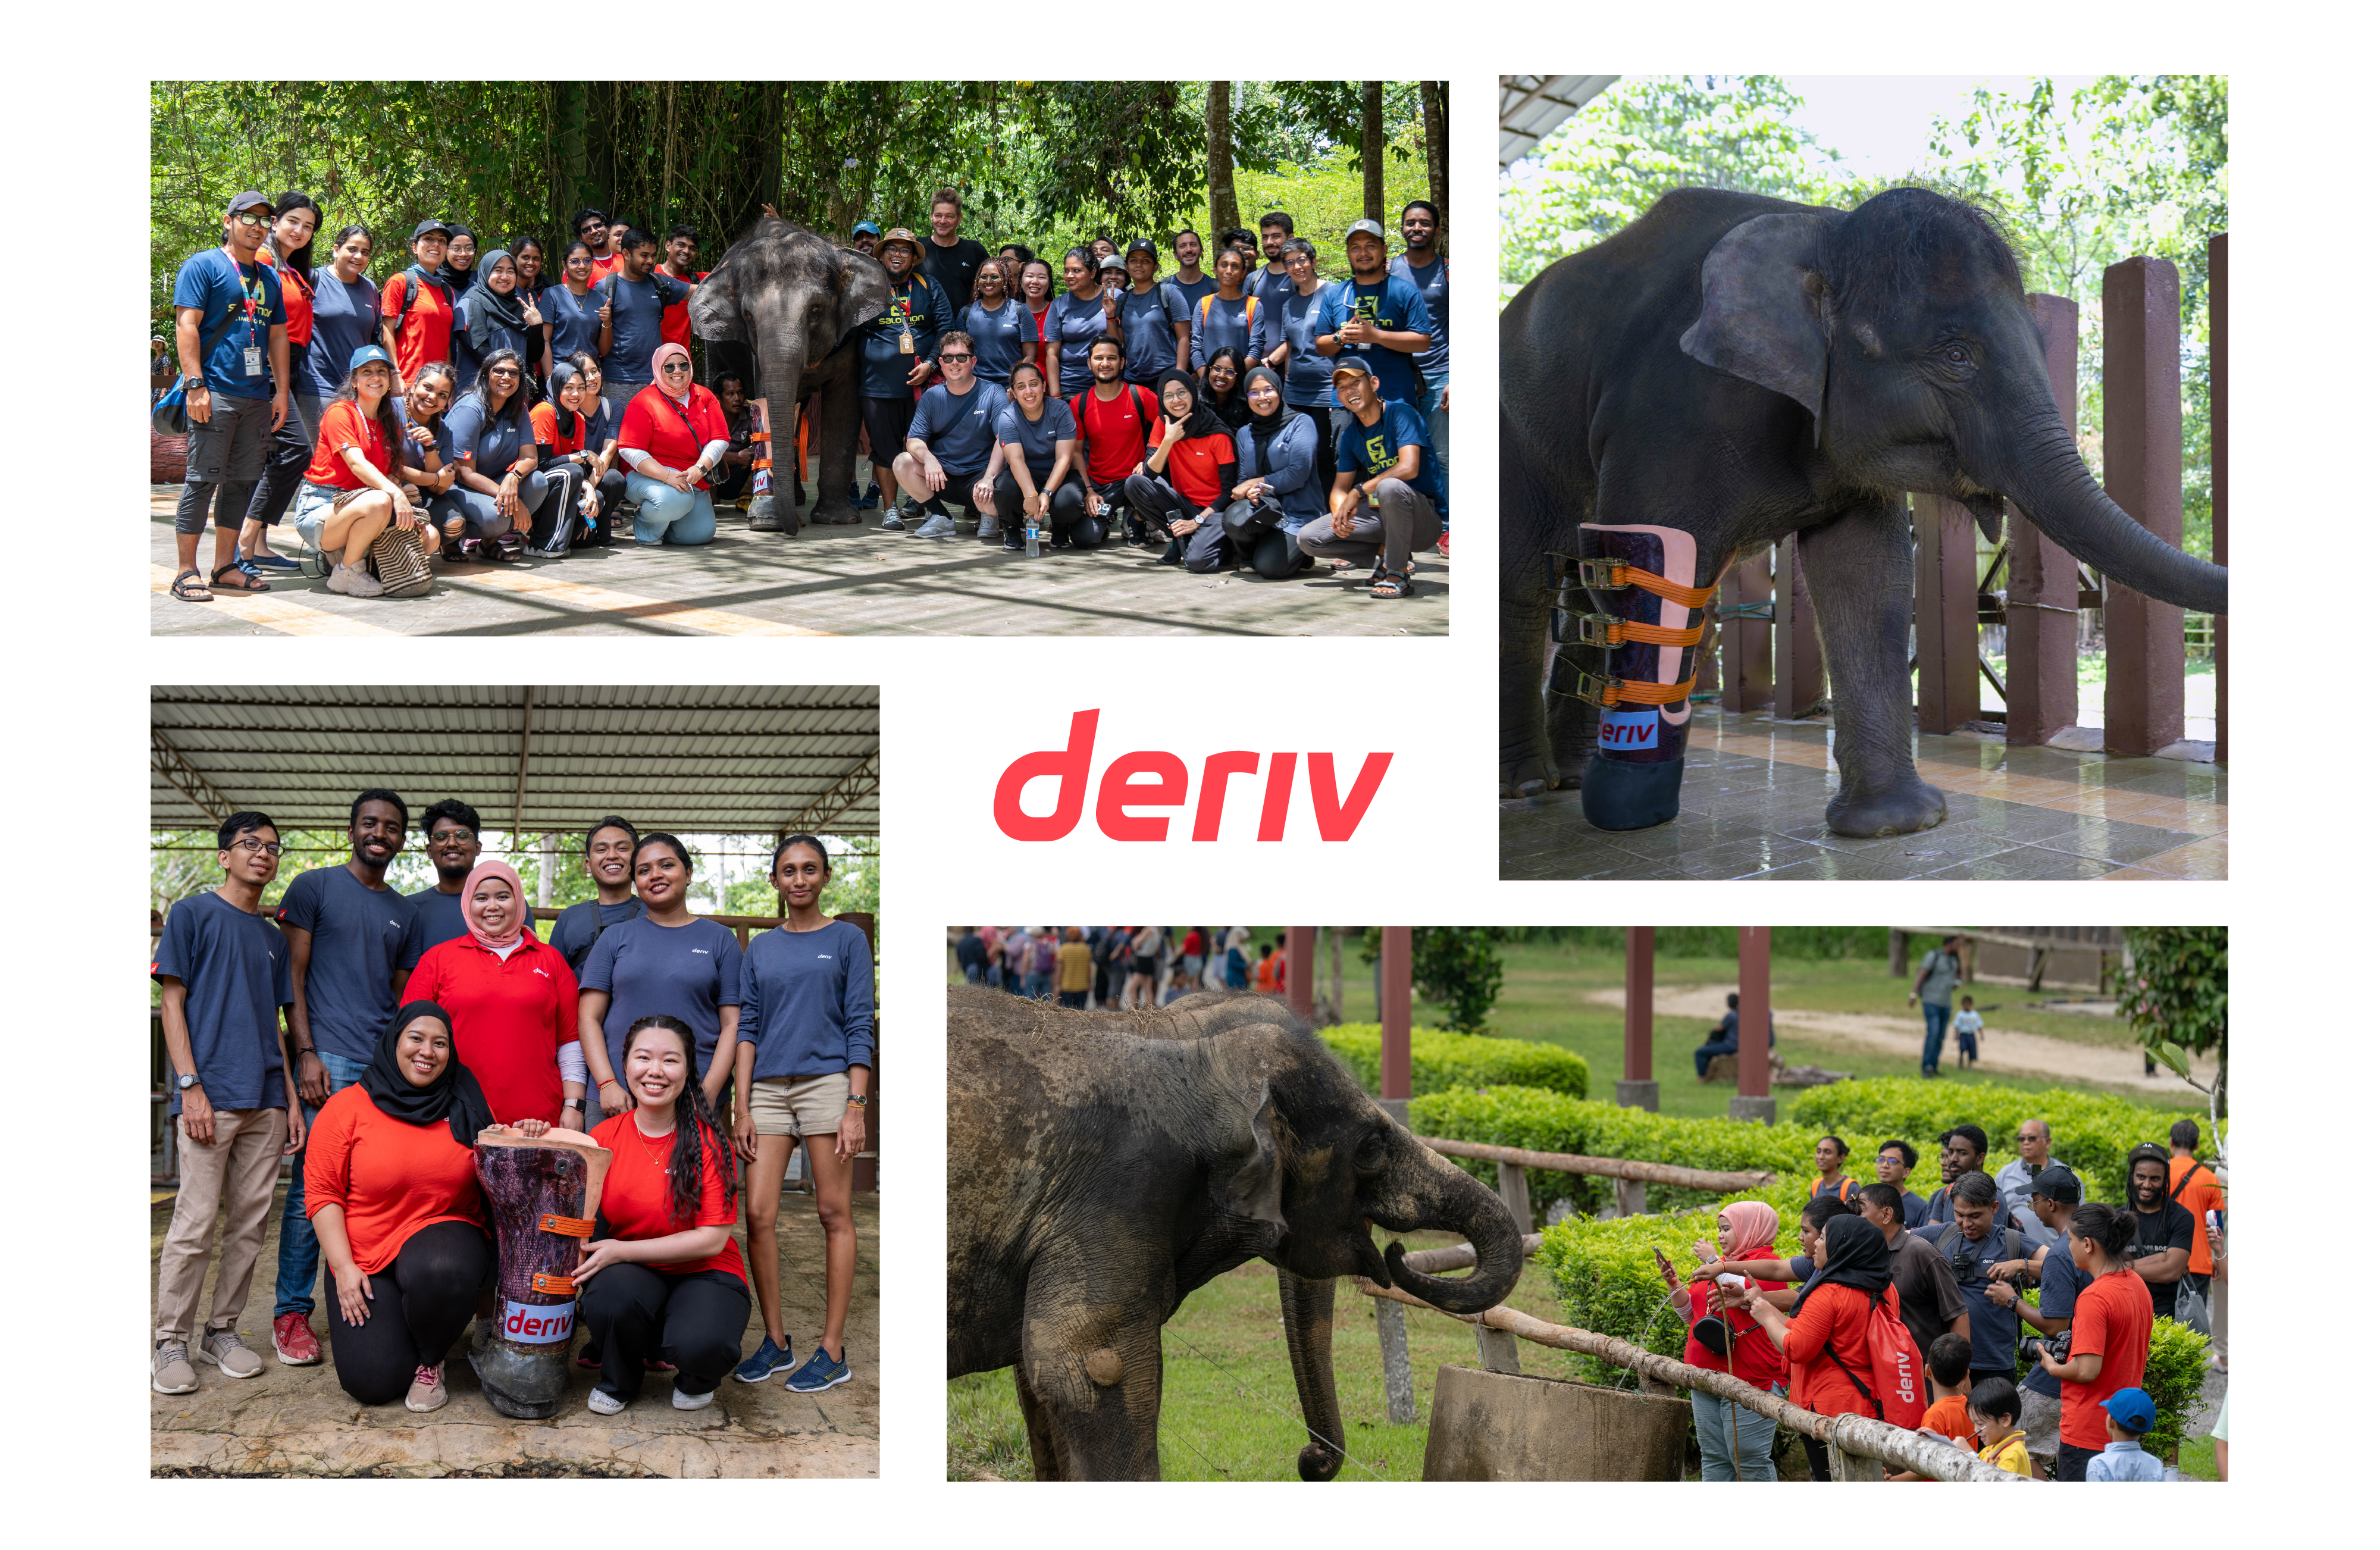 A equipa da  Deriv num santuário de elefantes com uma elefanta com uma prótese da marca Deriv.